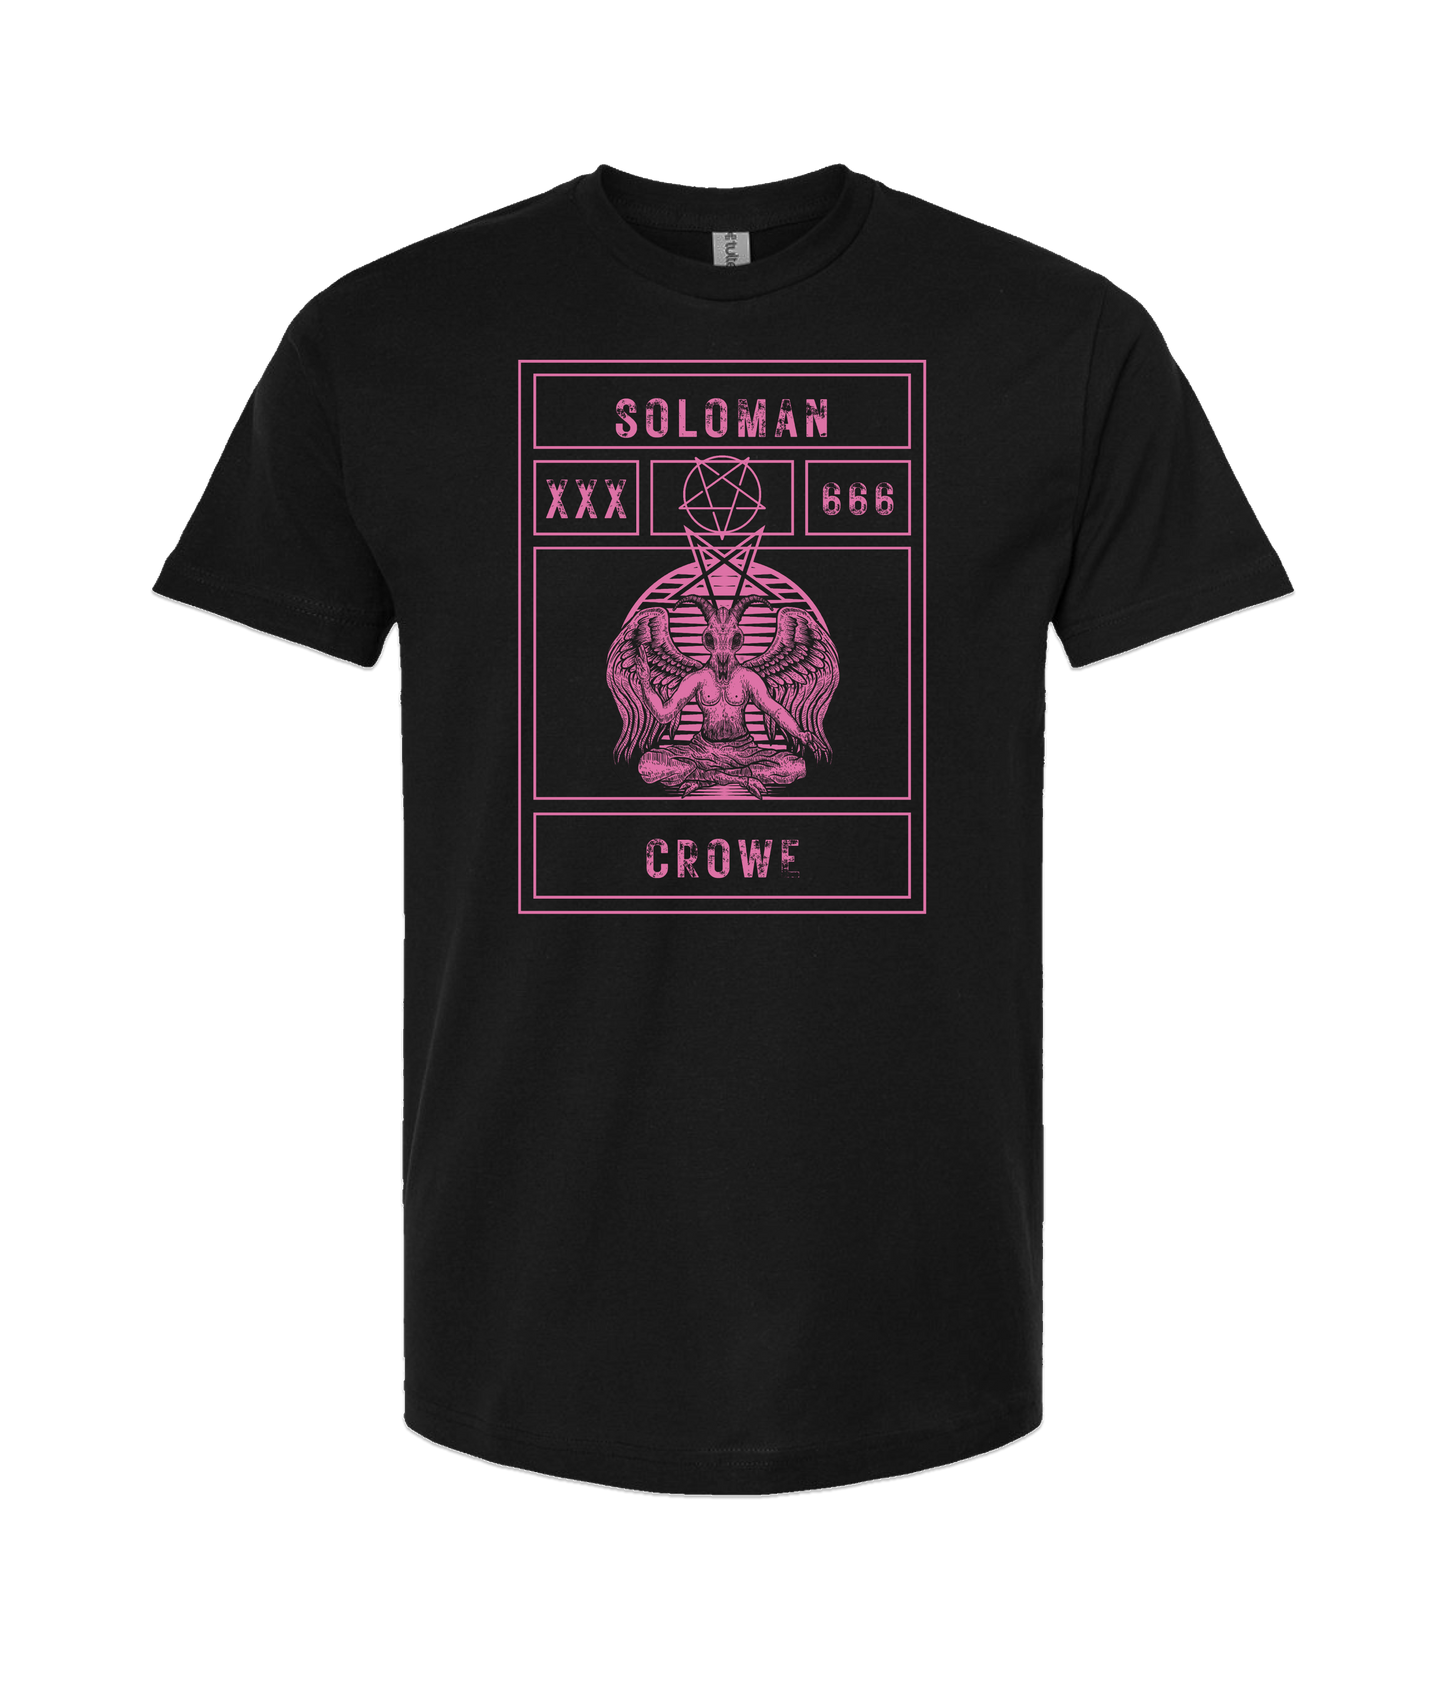 Soloman Crowe - XXX666 - Black T-Shirt